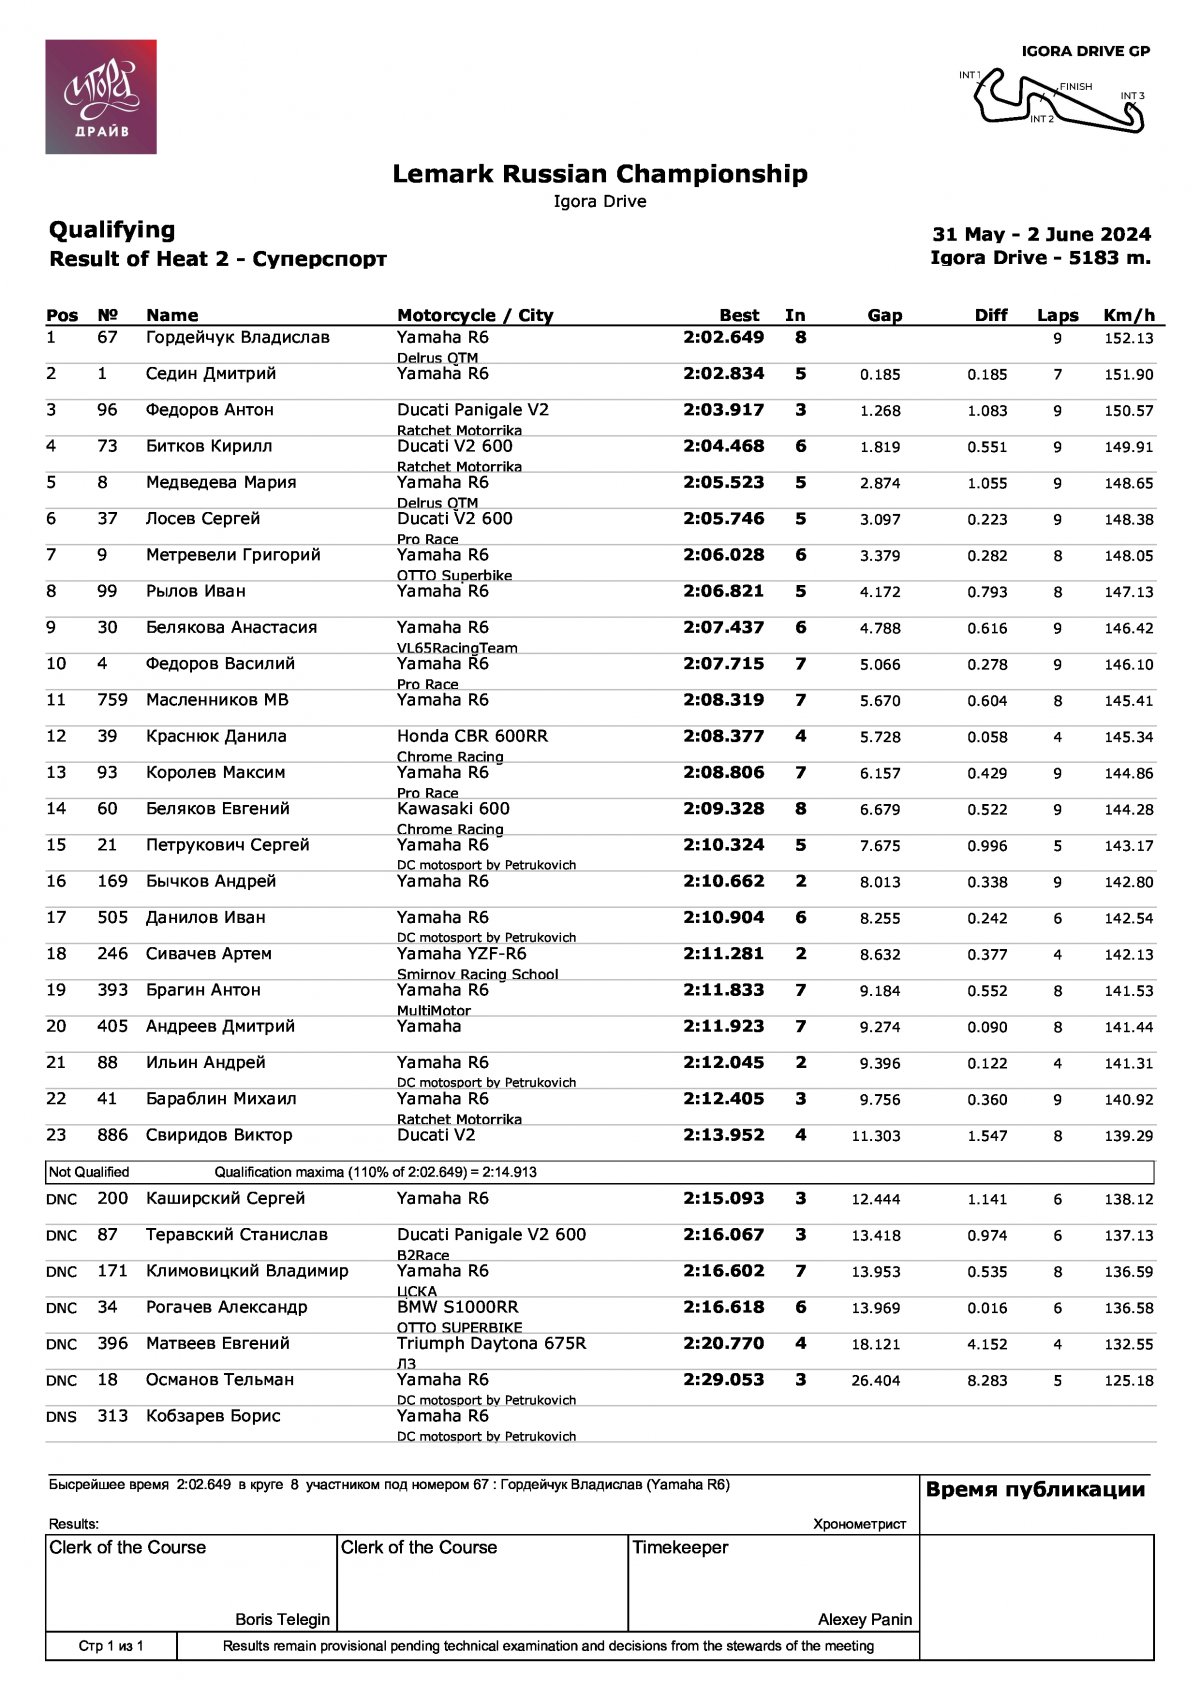 LEMARC Чемпионат России по кольцевым гонкам: Результаты квалификации в классе Суперспорт